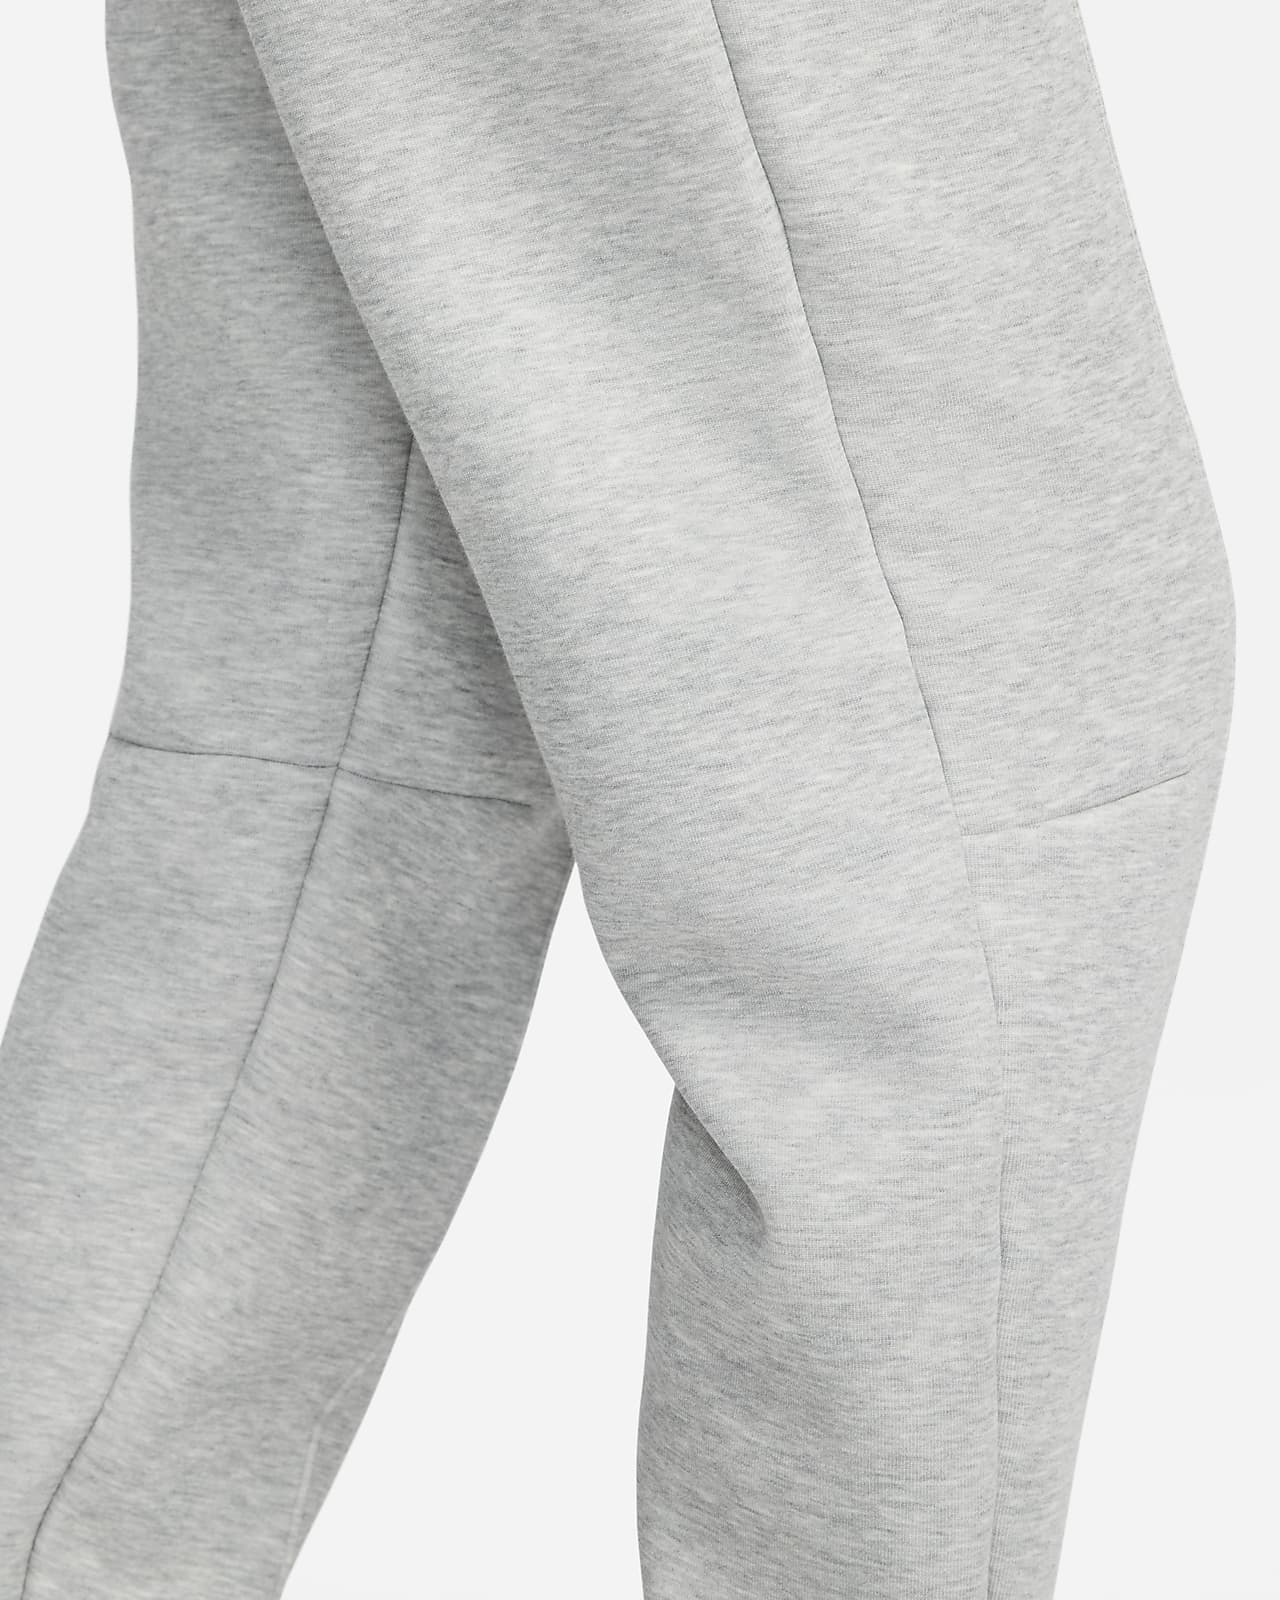 Women's Nike Sportswear Tech Fleece Pants in Black